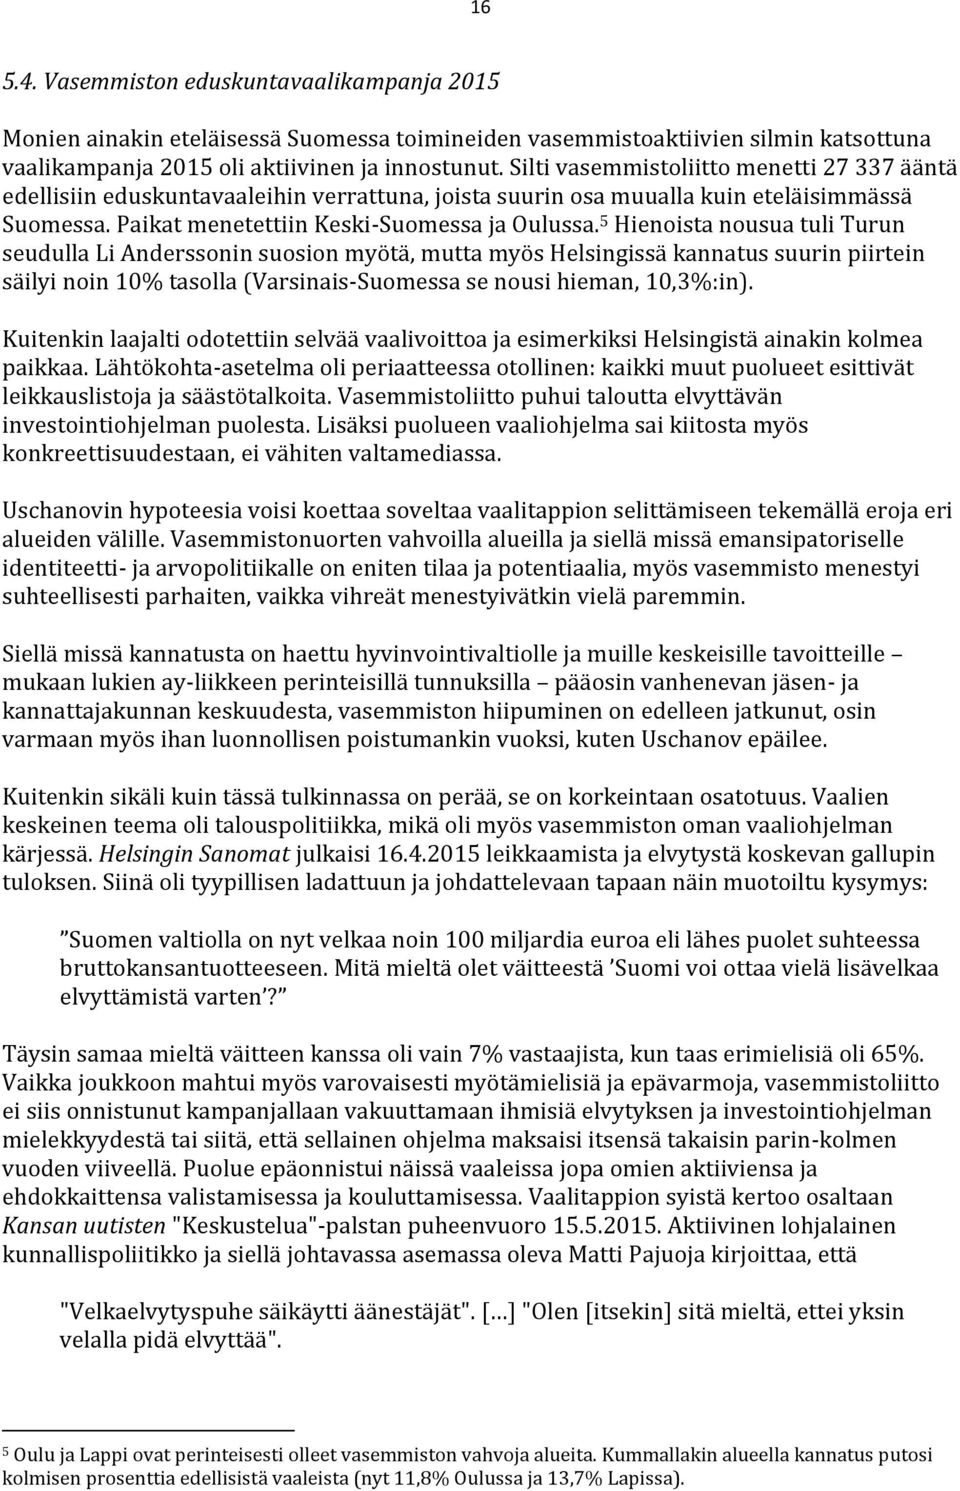 5 Hienoista nousua tuli Turun seudulla Li Anderssonin suosion myötä, mutta myös Helsingissä kannatus suurin piirtein säilyi noin 10% tasolla (Varsinais-Suomessa se nousi hieman, 10,3%:in).